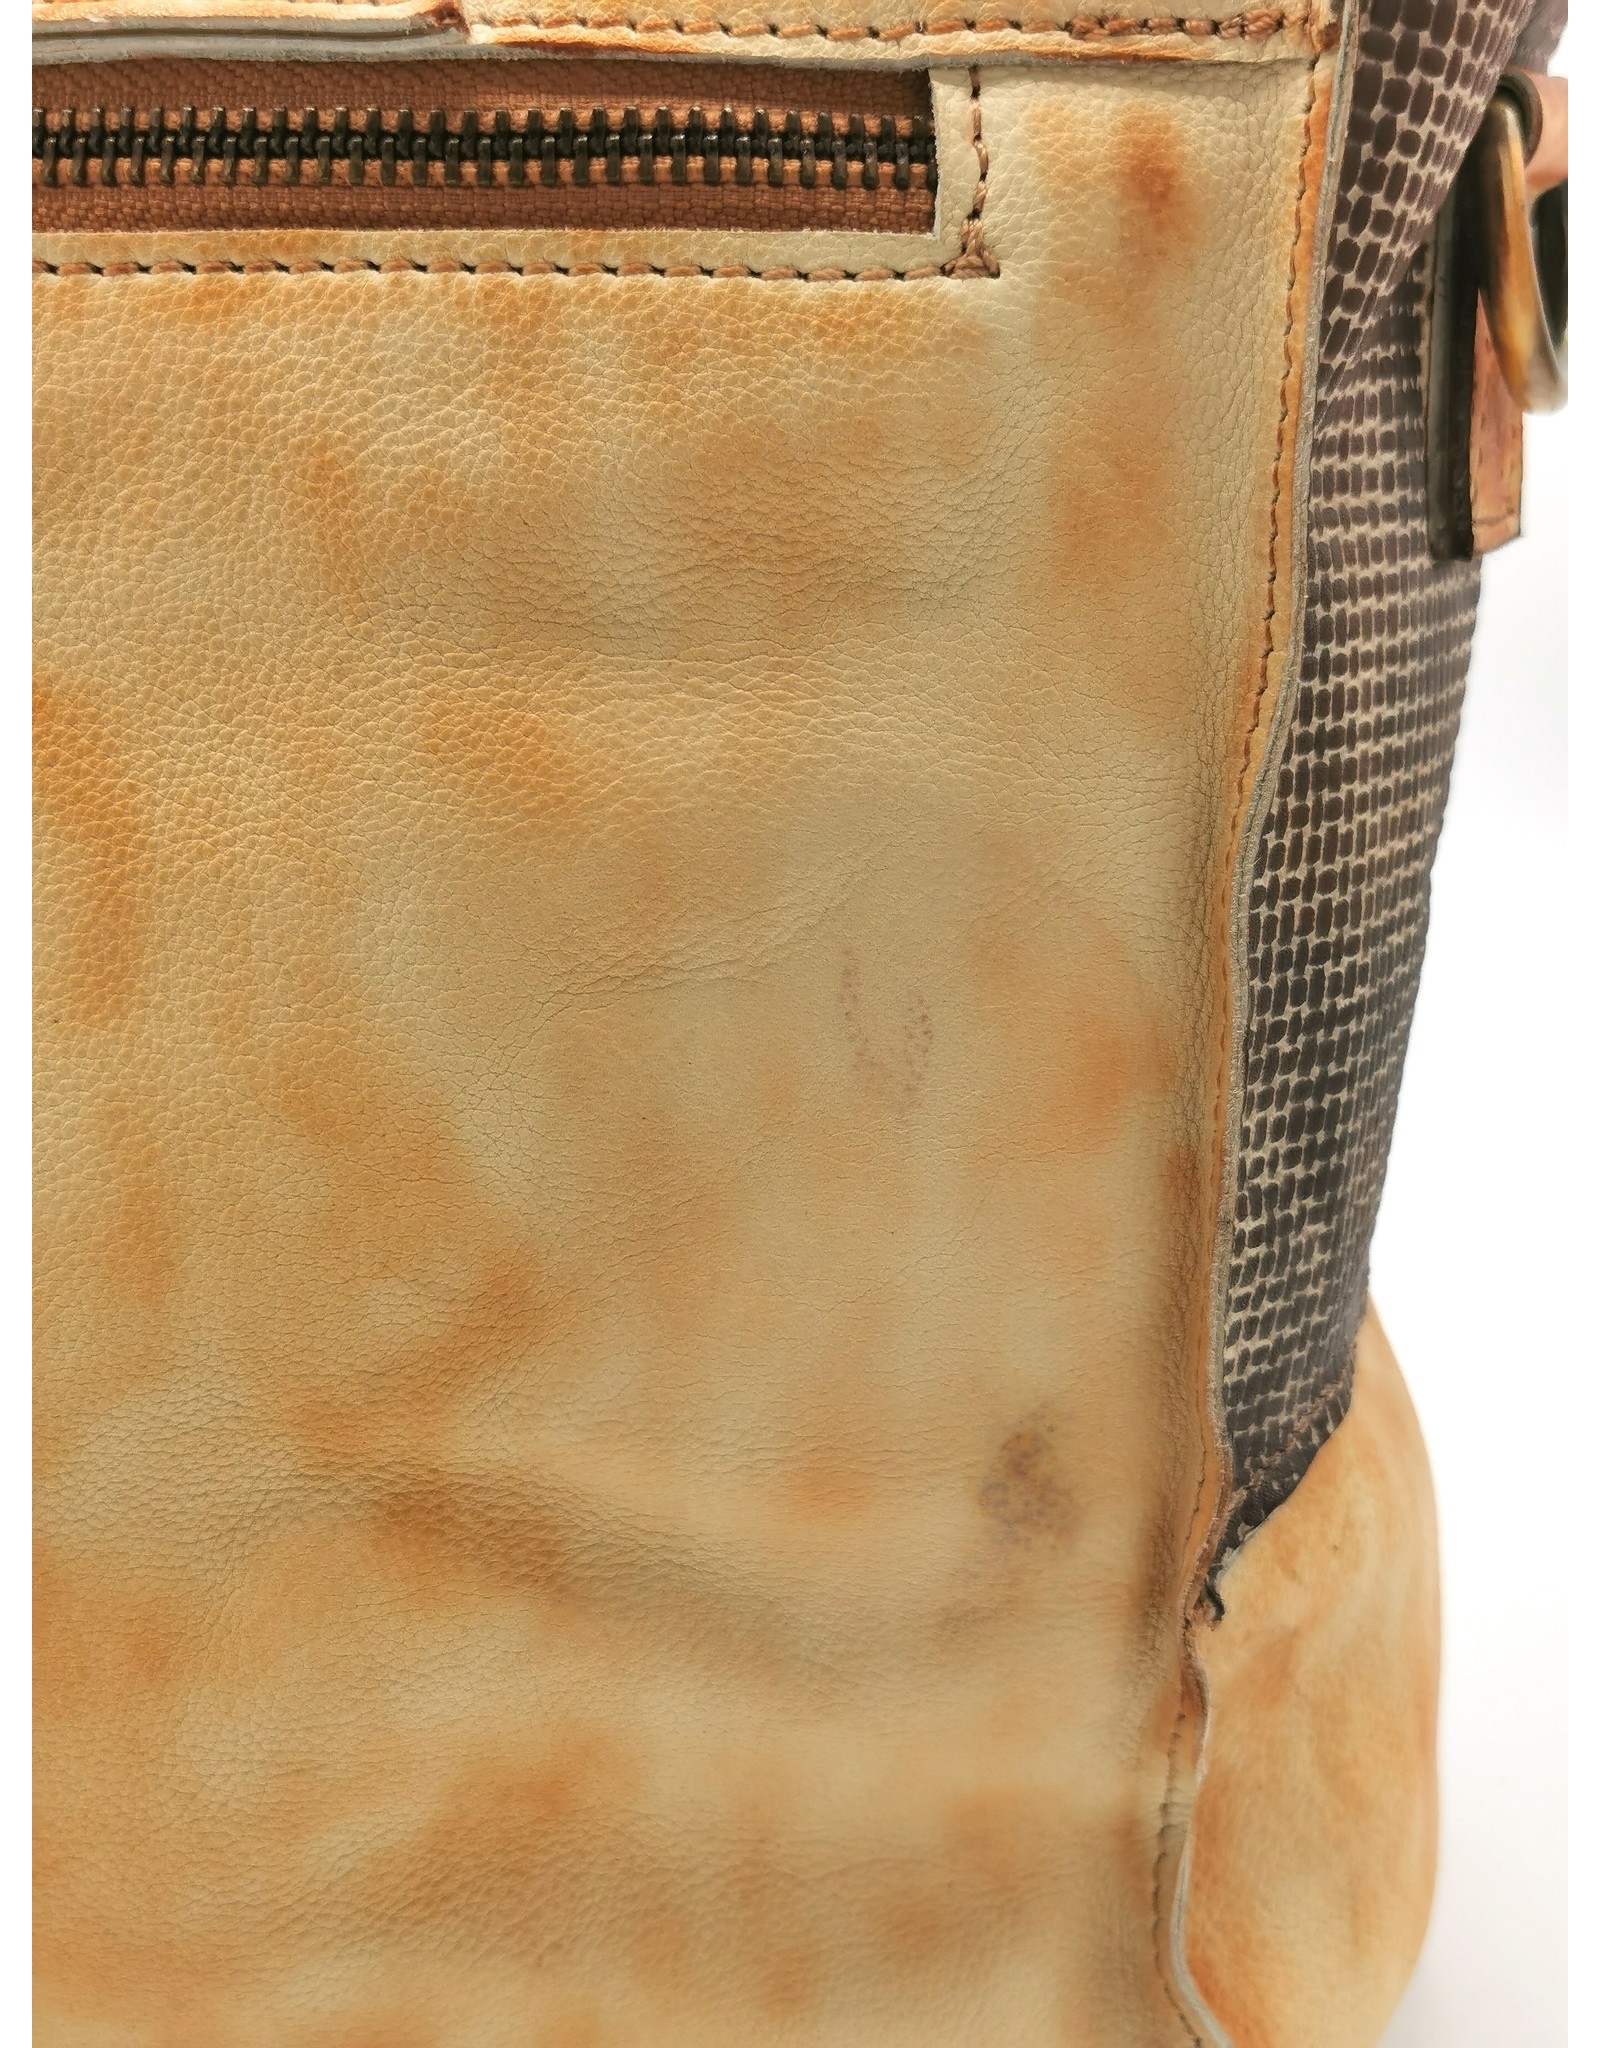 LandLeder Leather bags - Leather Shoulder Bag LandLeder Orange-Brown